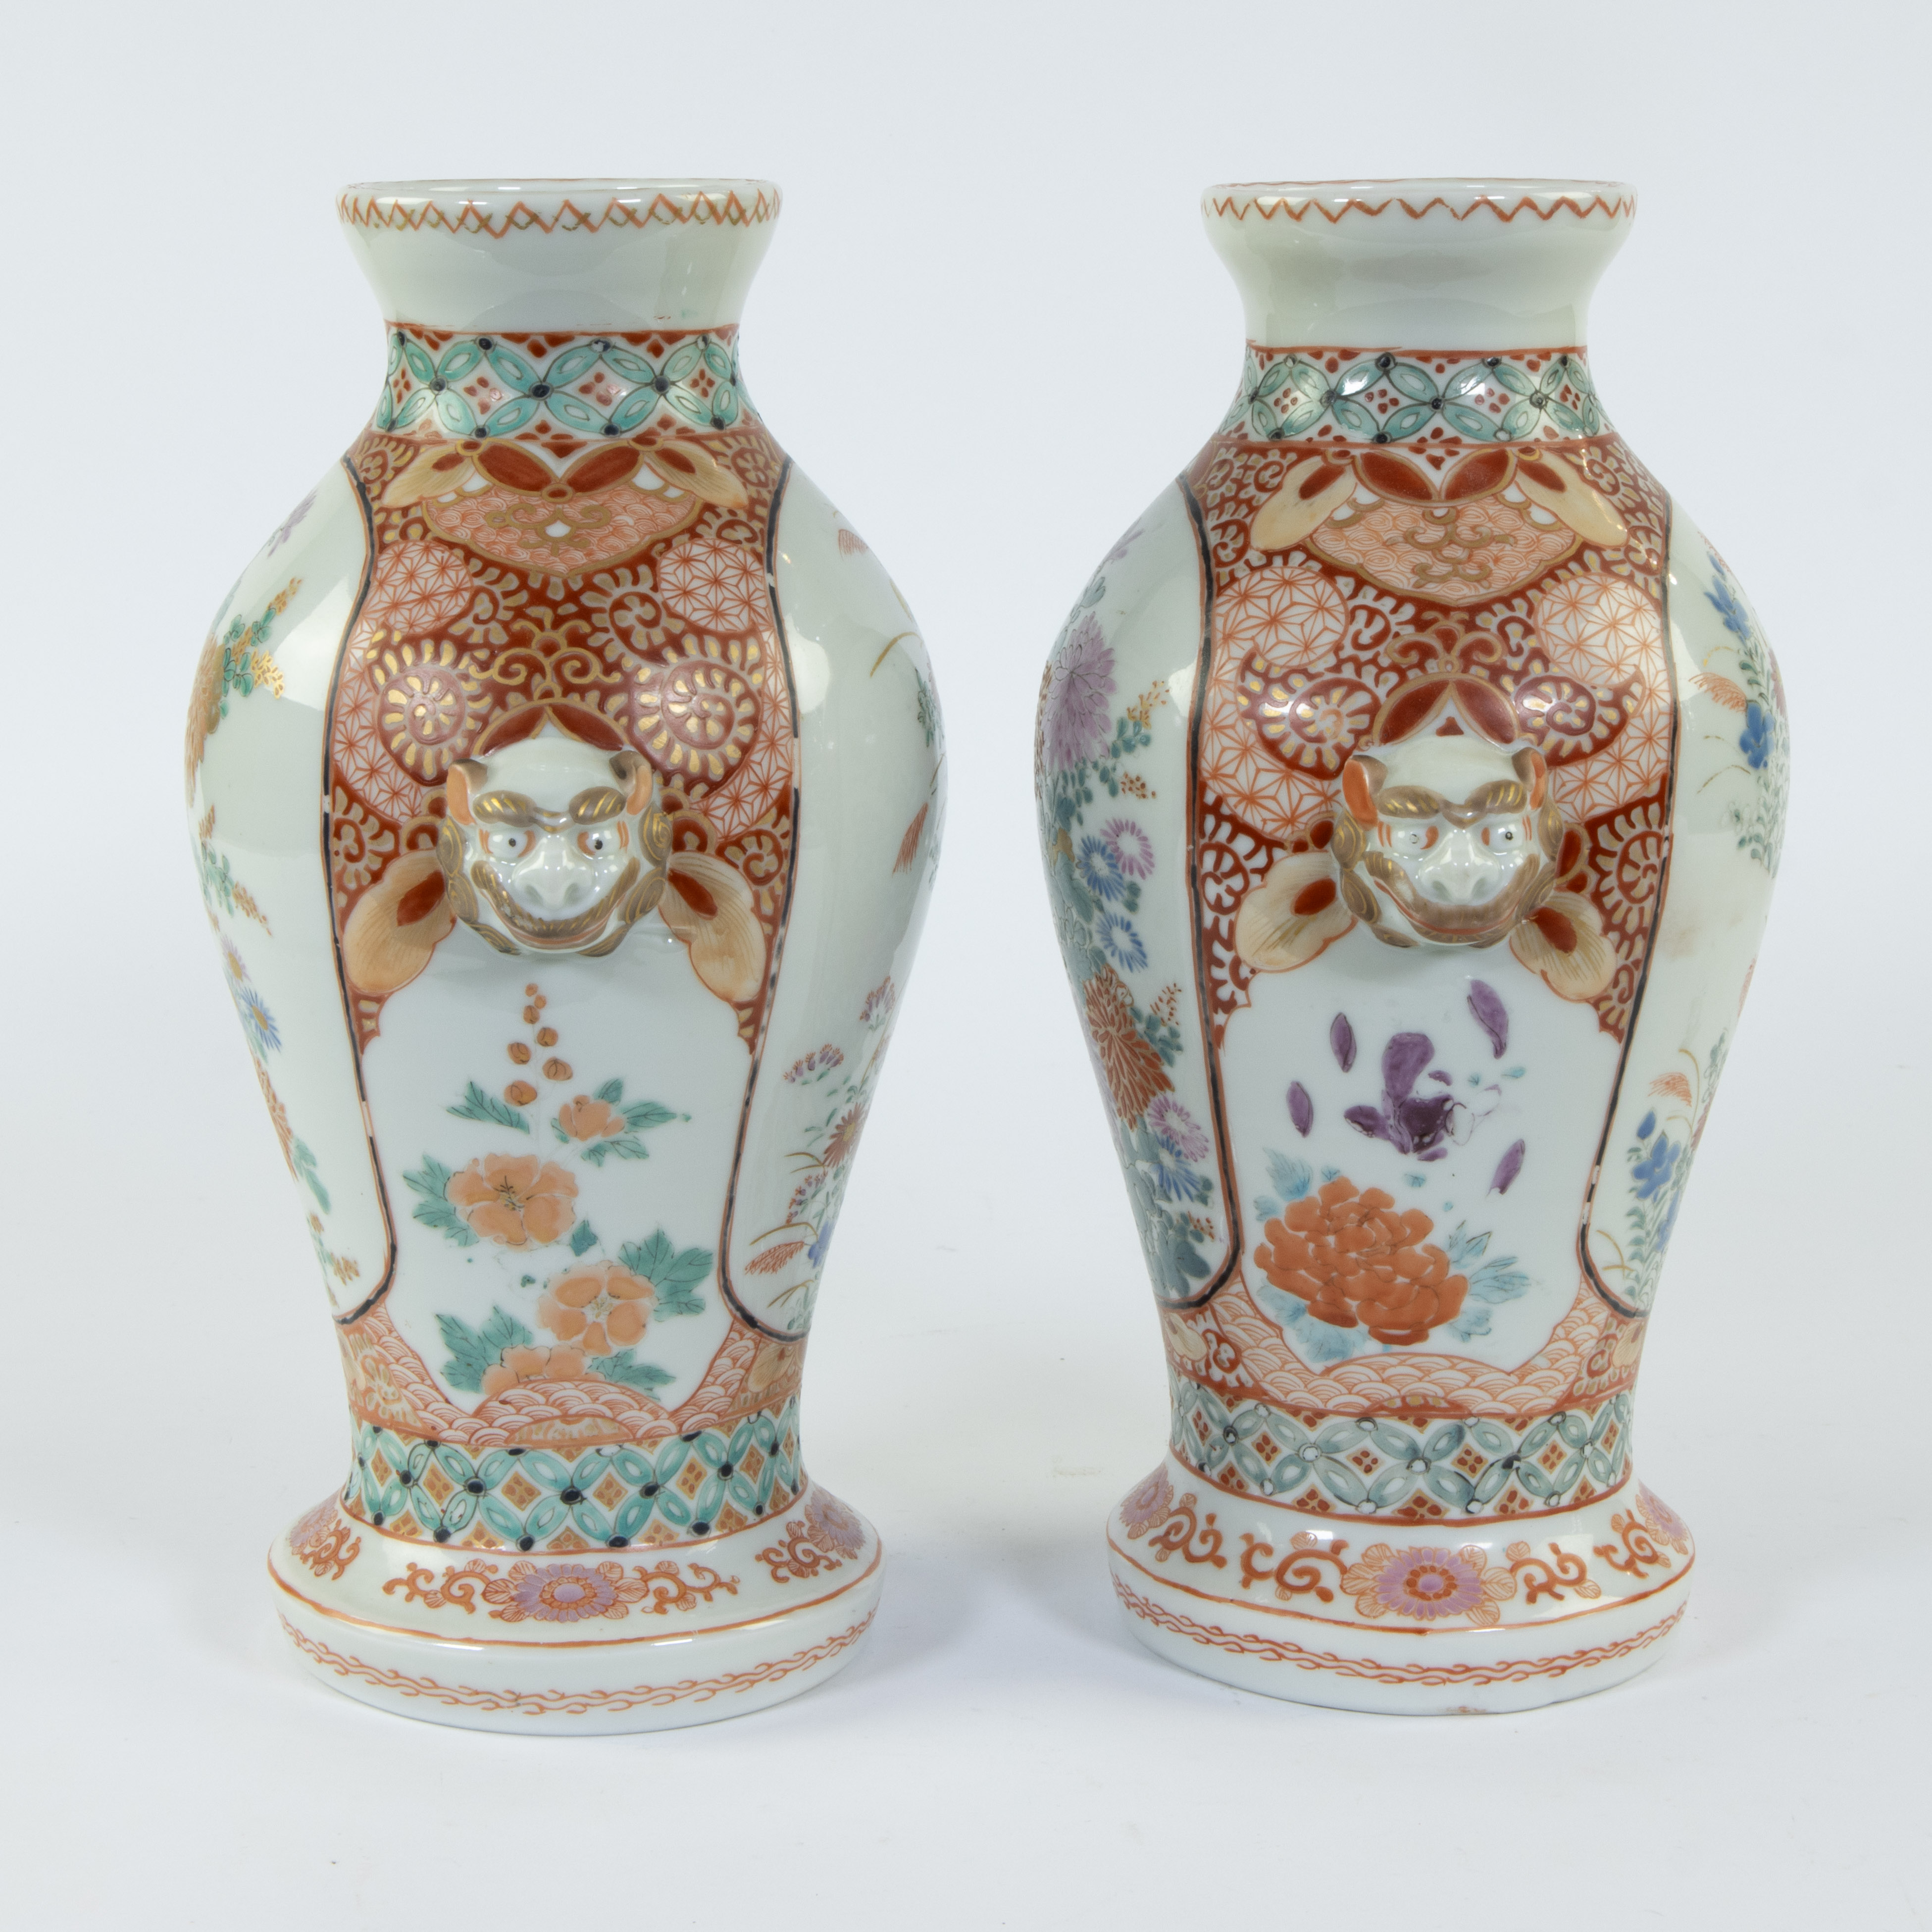 Pair of Japanese Imari vases - Image 2 of 5